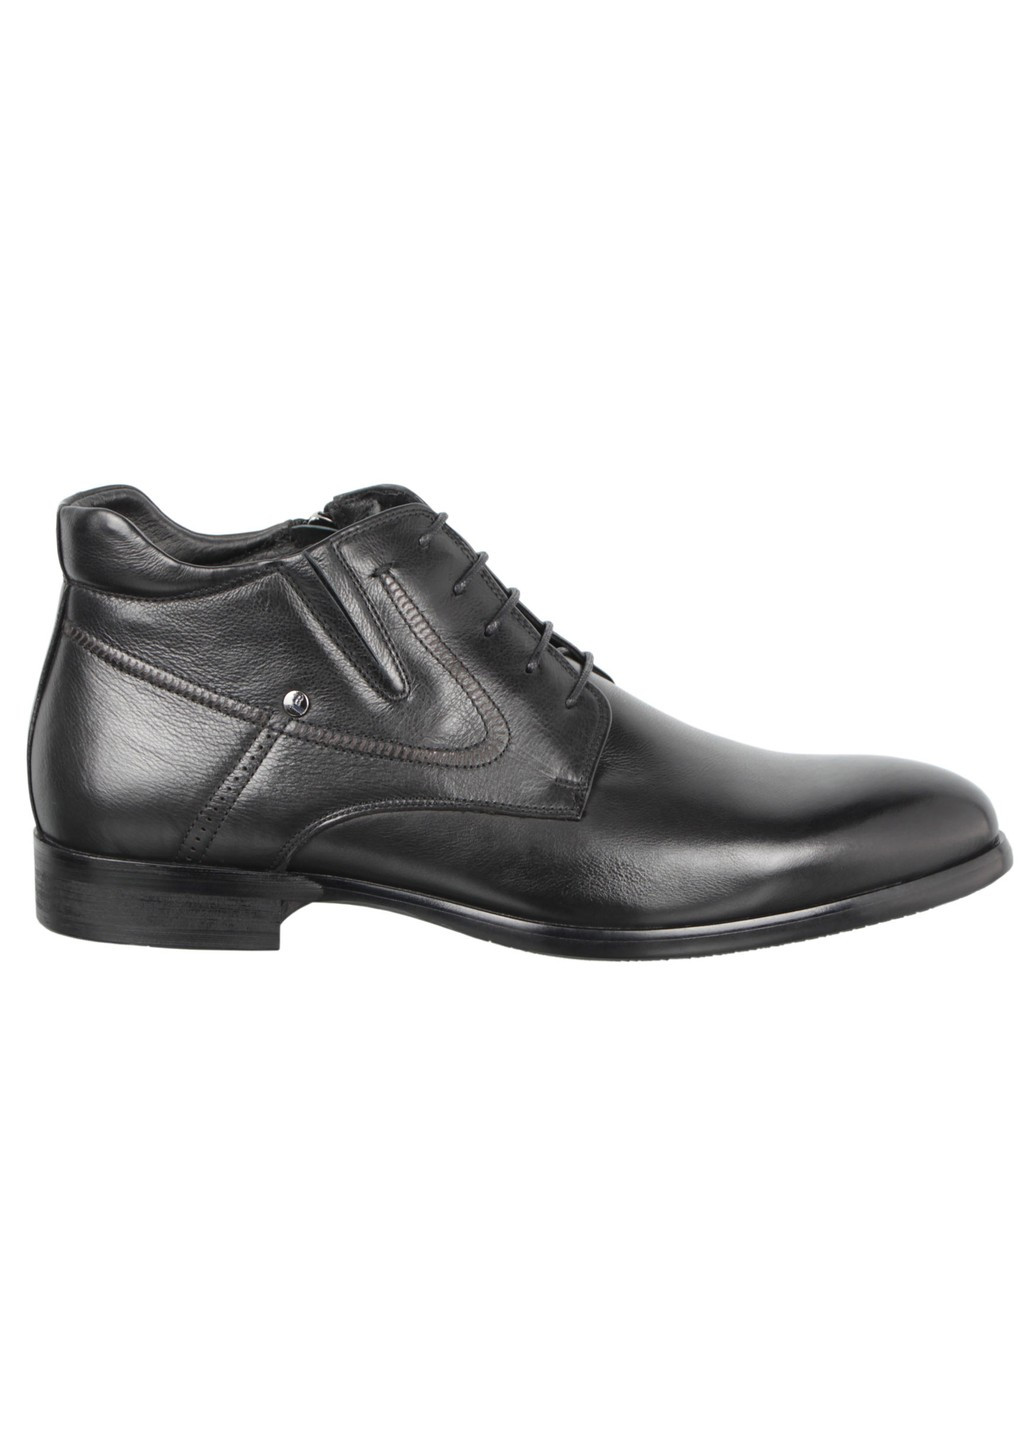 Черные осенние мужские классические ботинки 197773 Brooman